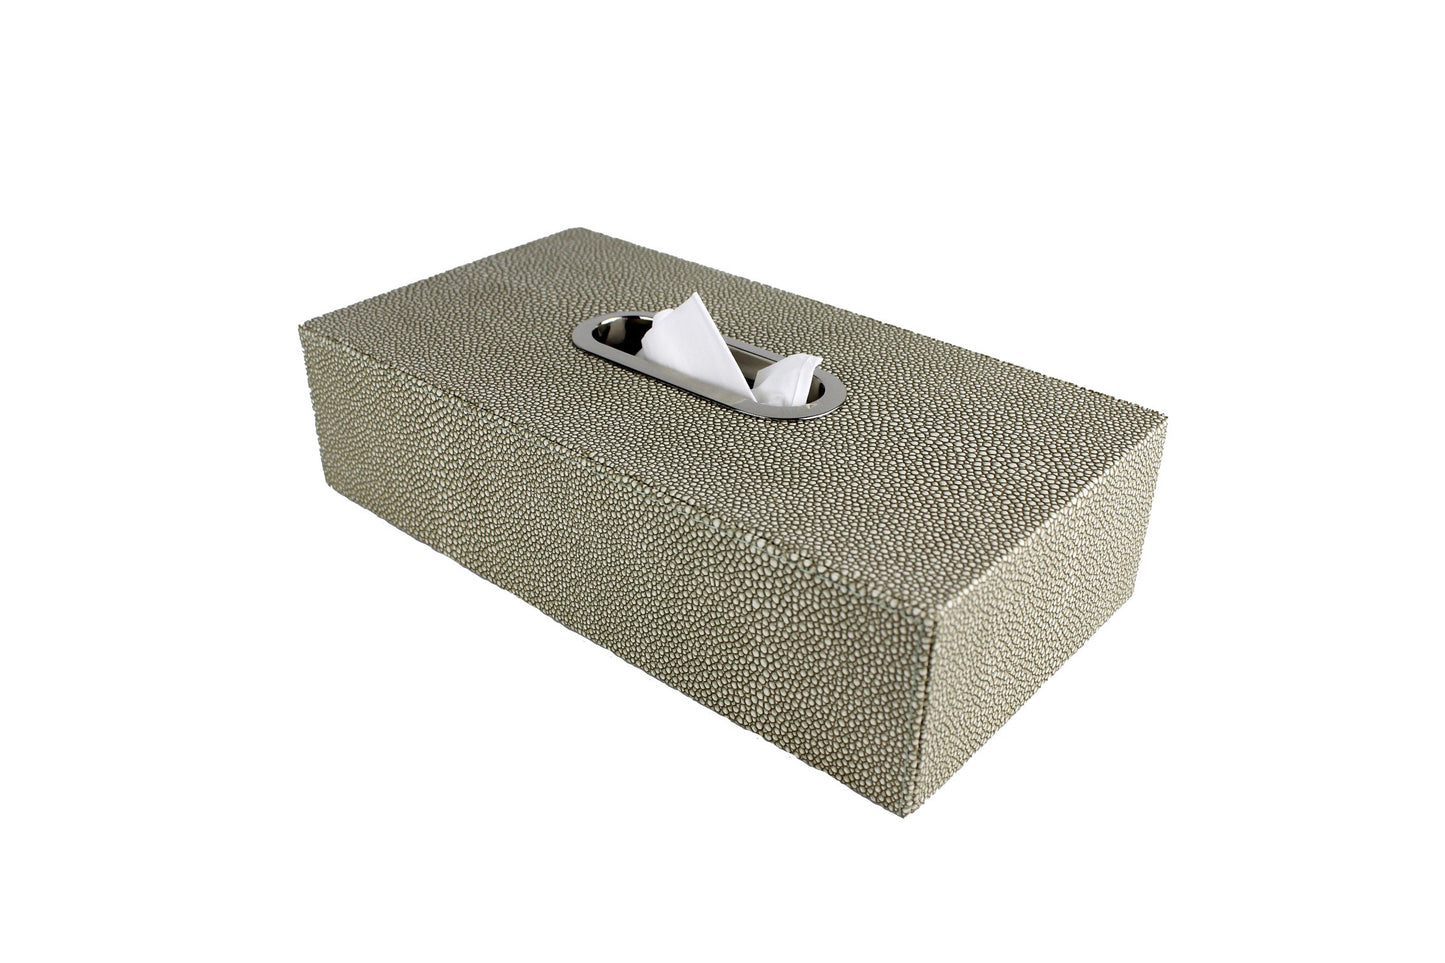 grüne Box für Taschentücher in grünem Kunstleder mit Edelstahlring als Öffnung